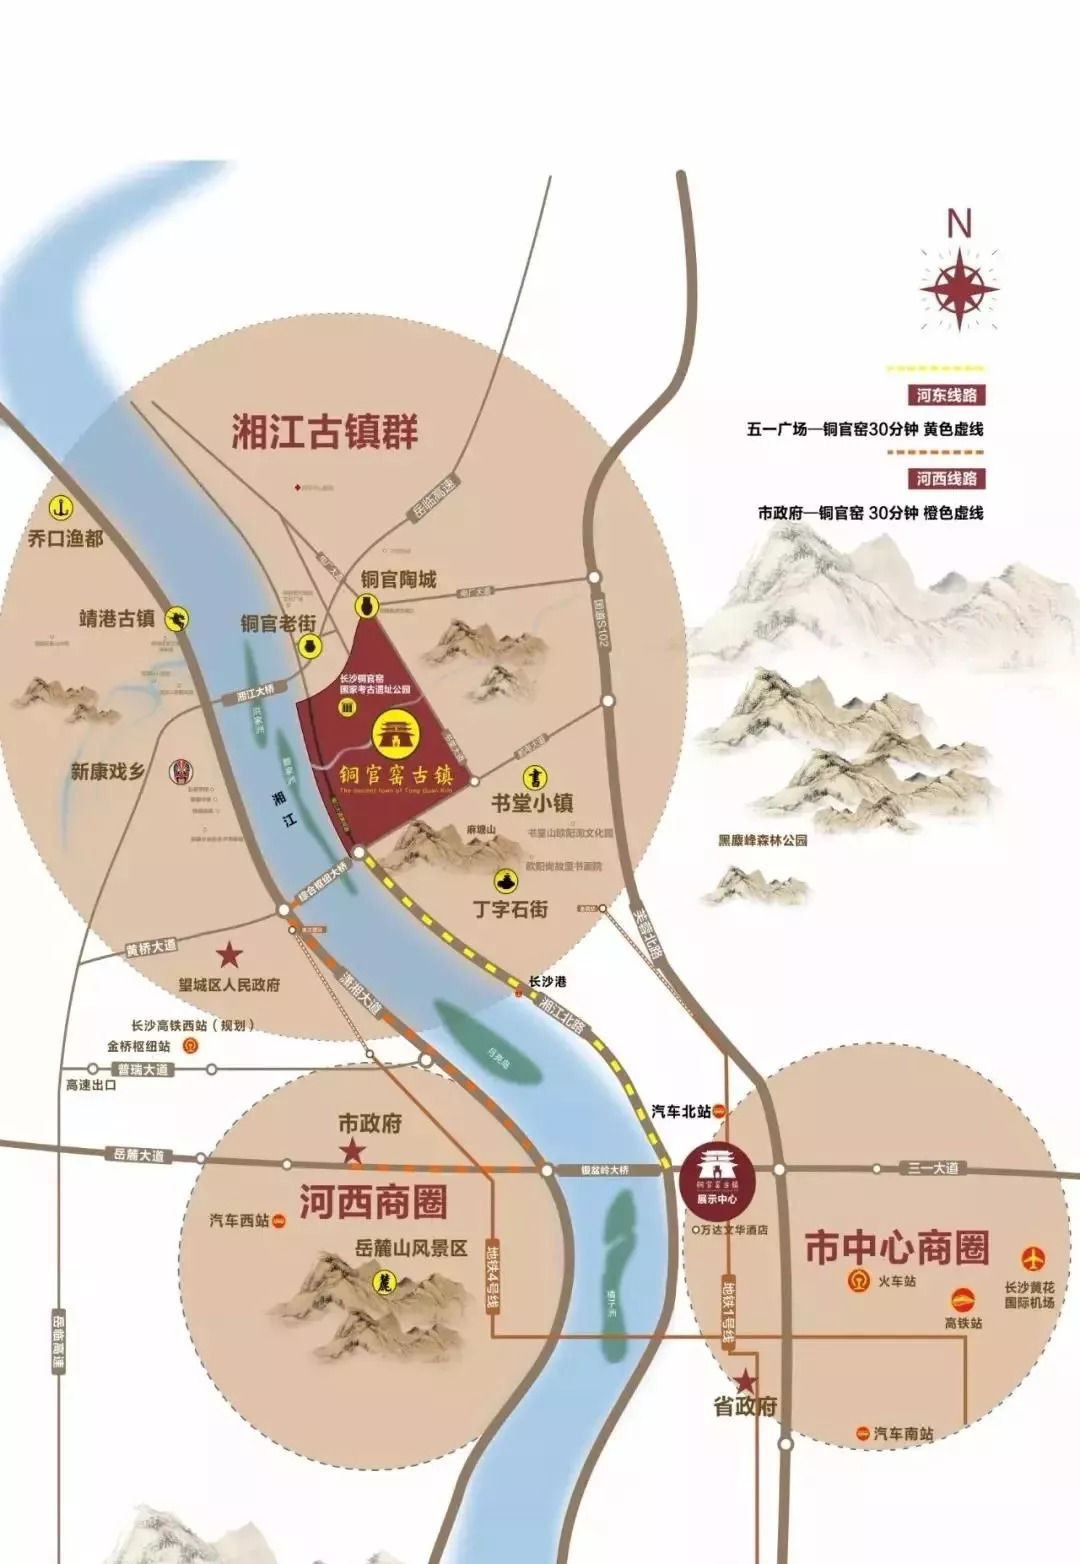 铜官窑地图图片